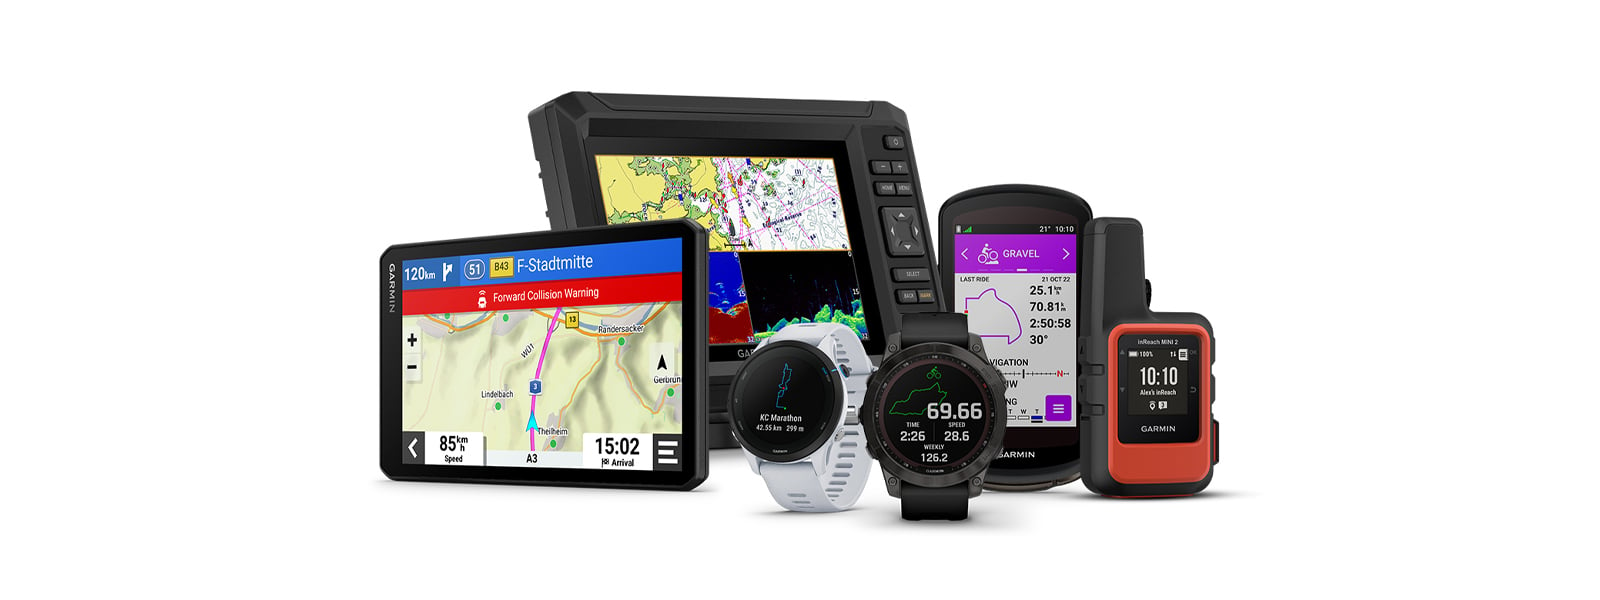 Iniciación en el uso del GPS